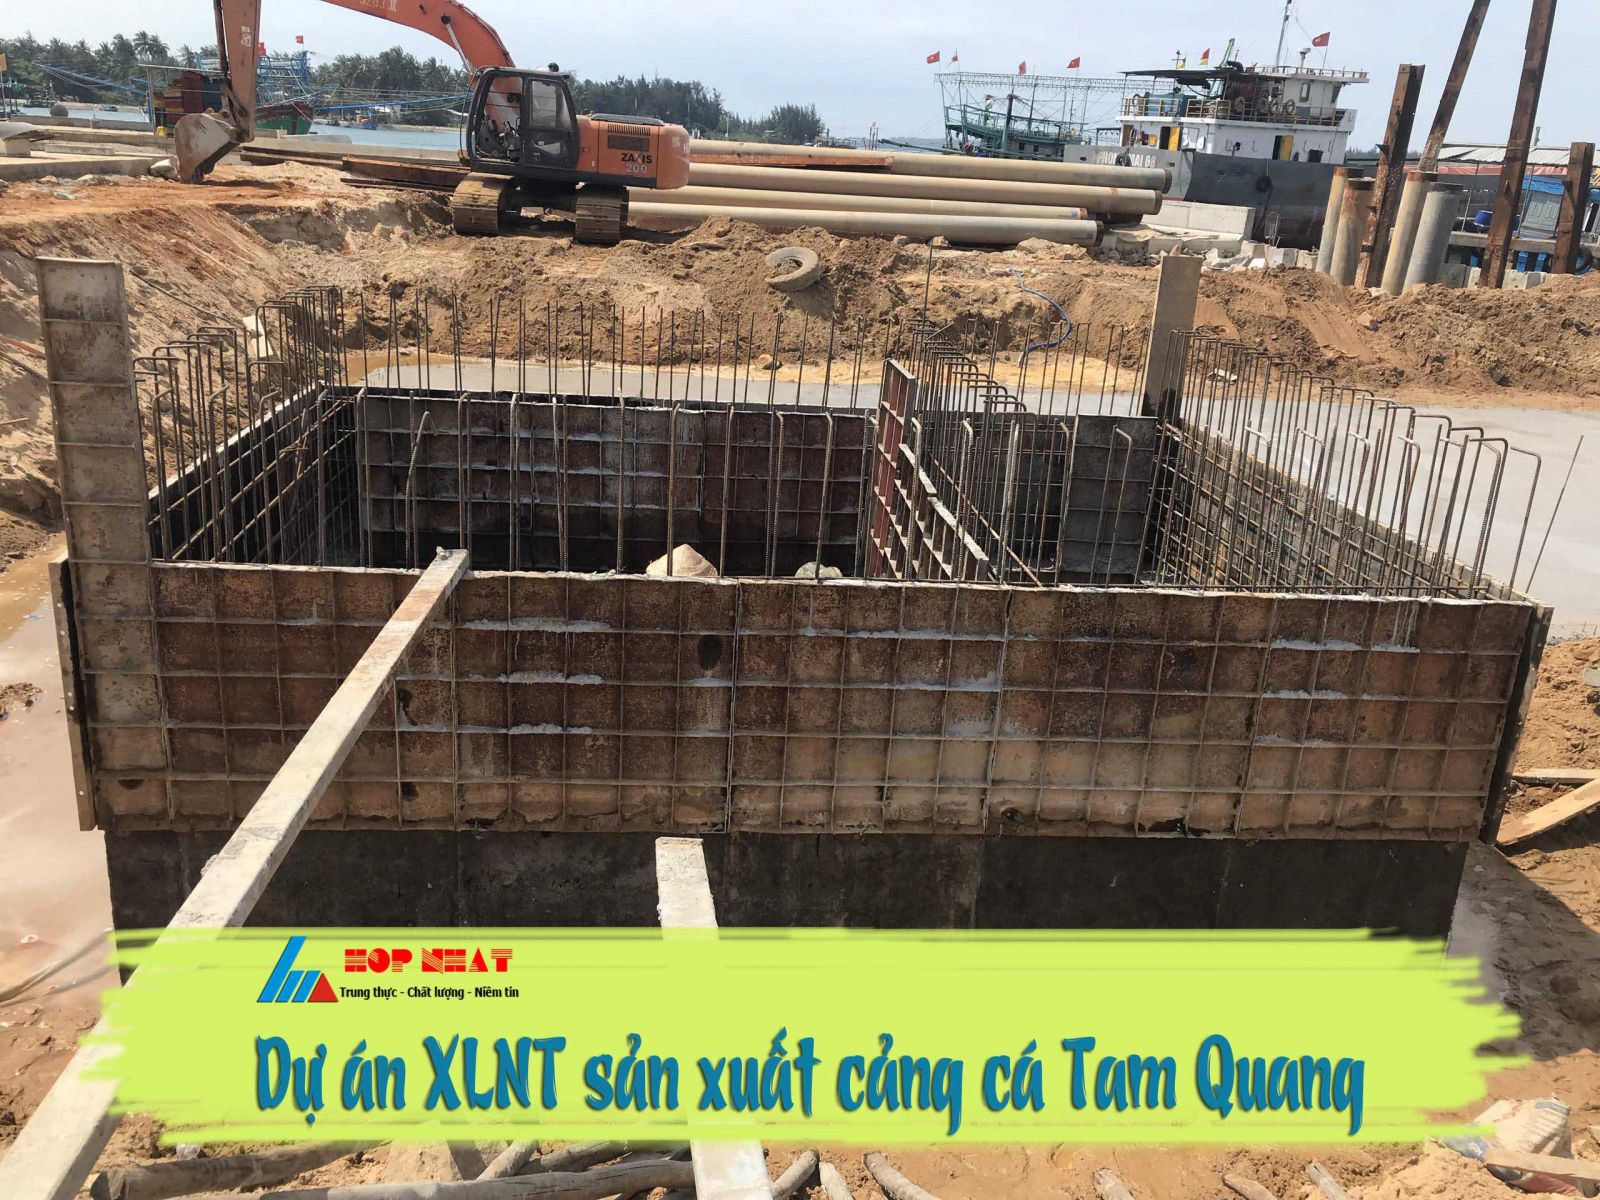 Xử lý nước thải sản xuất cảng cá Tam Quang 